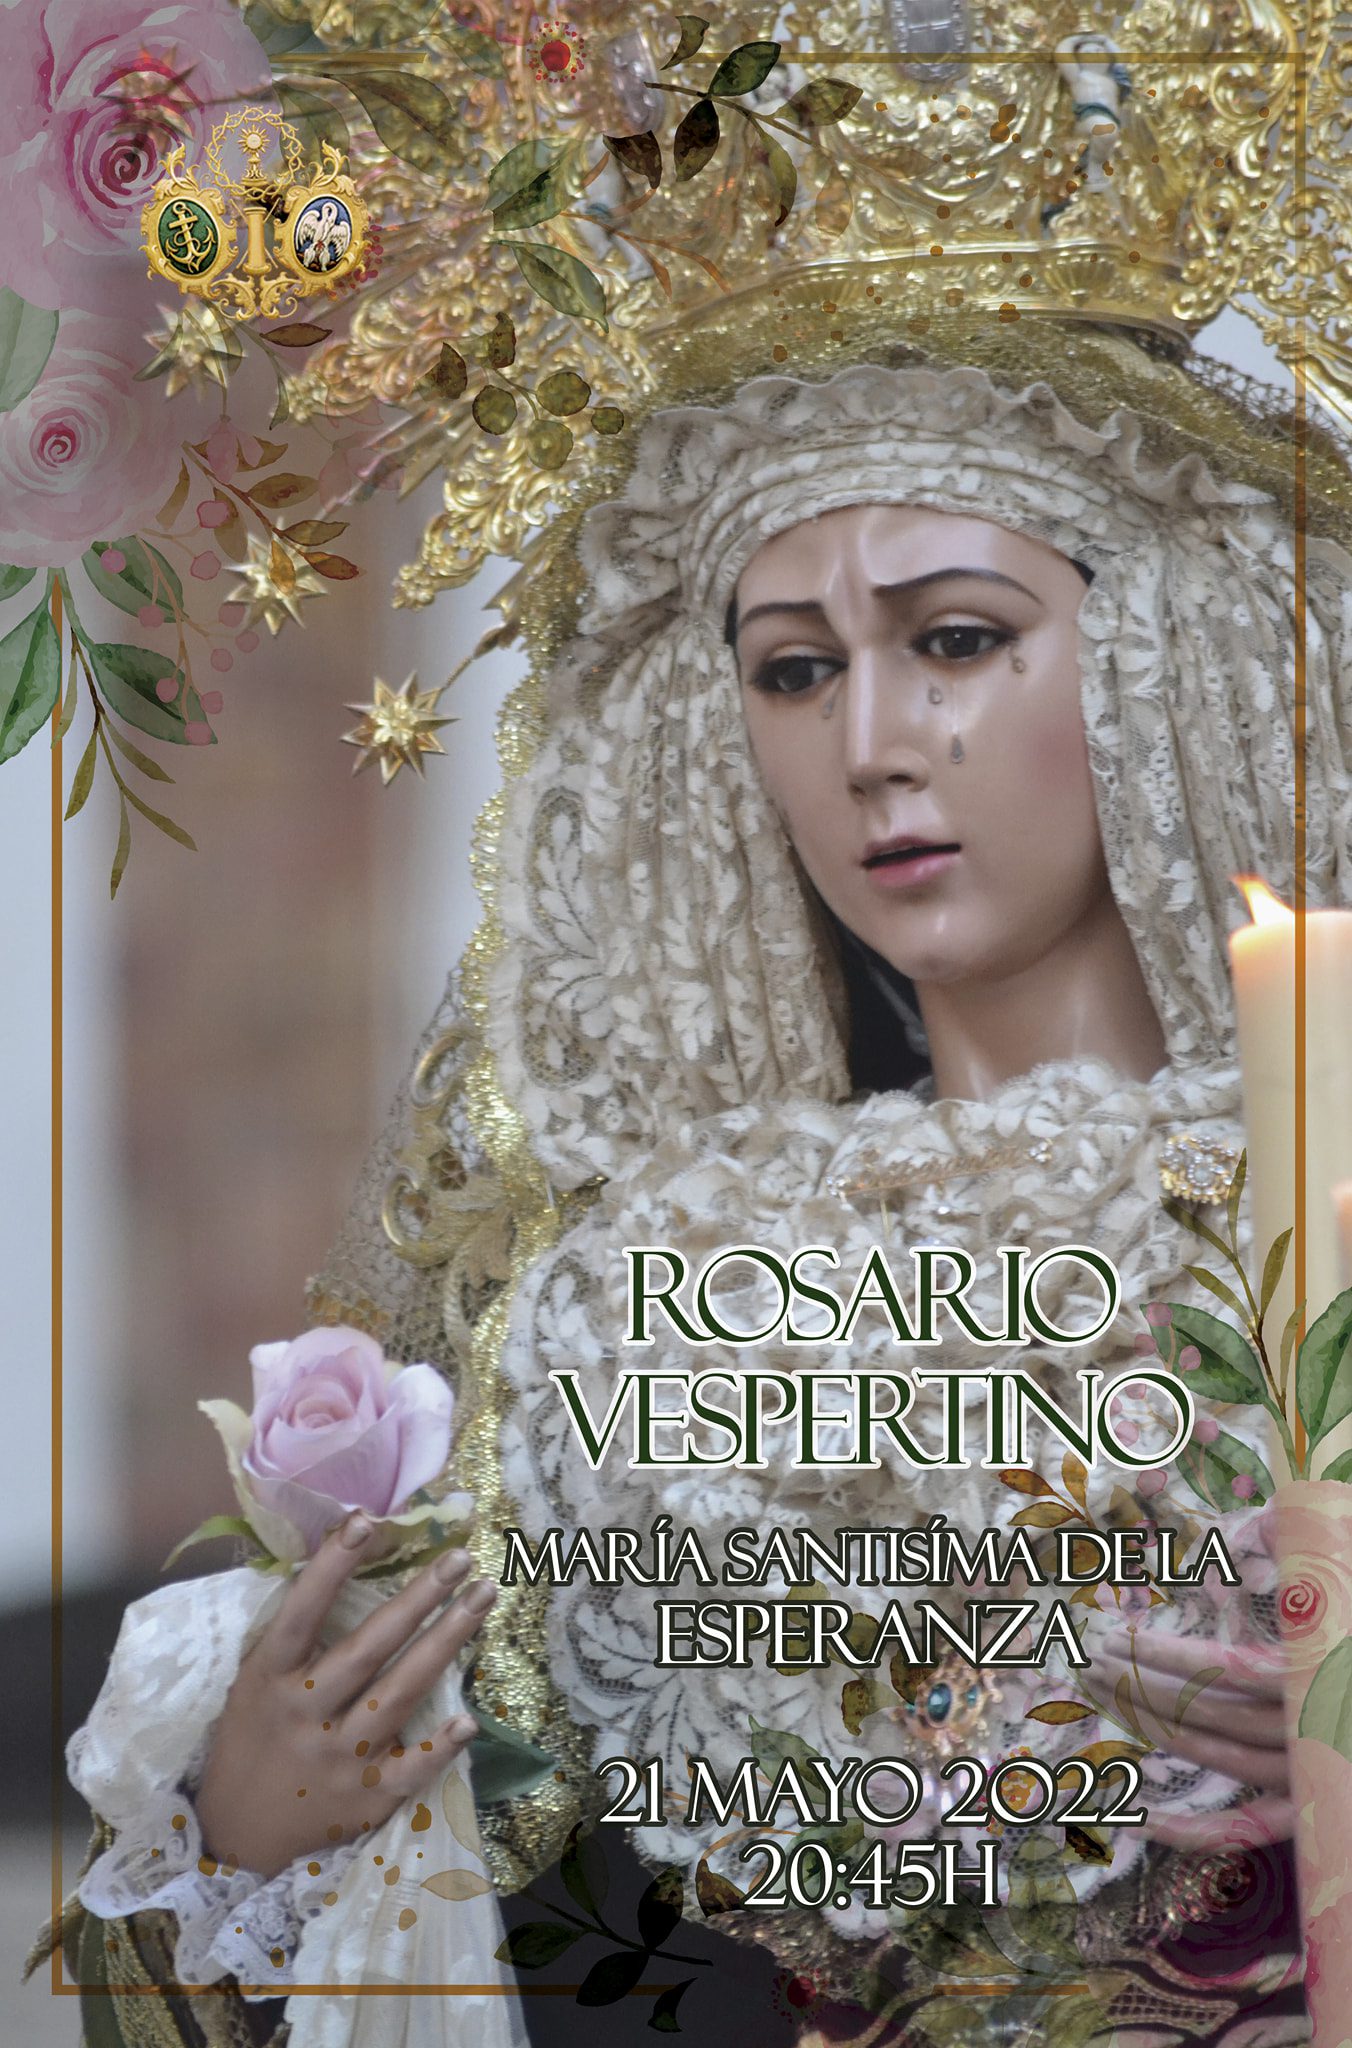 Rosario Vespertino con María Santísima de la Esperanza de Jaén este Sábado